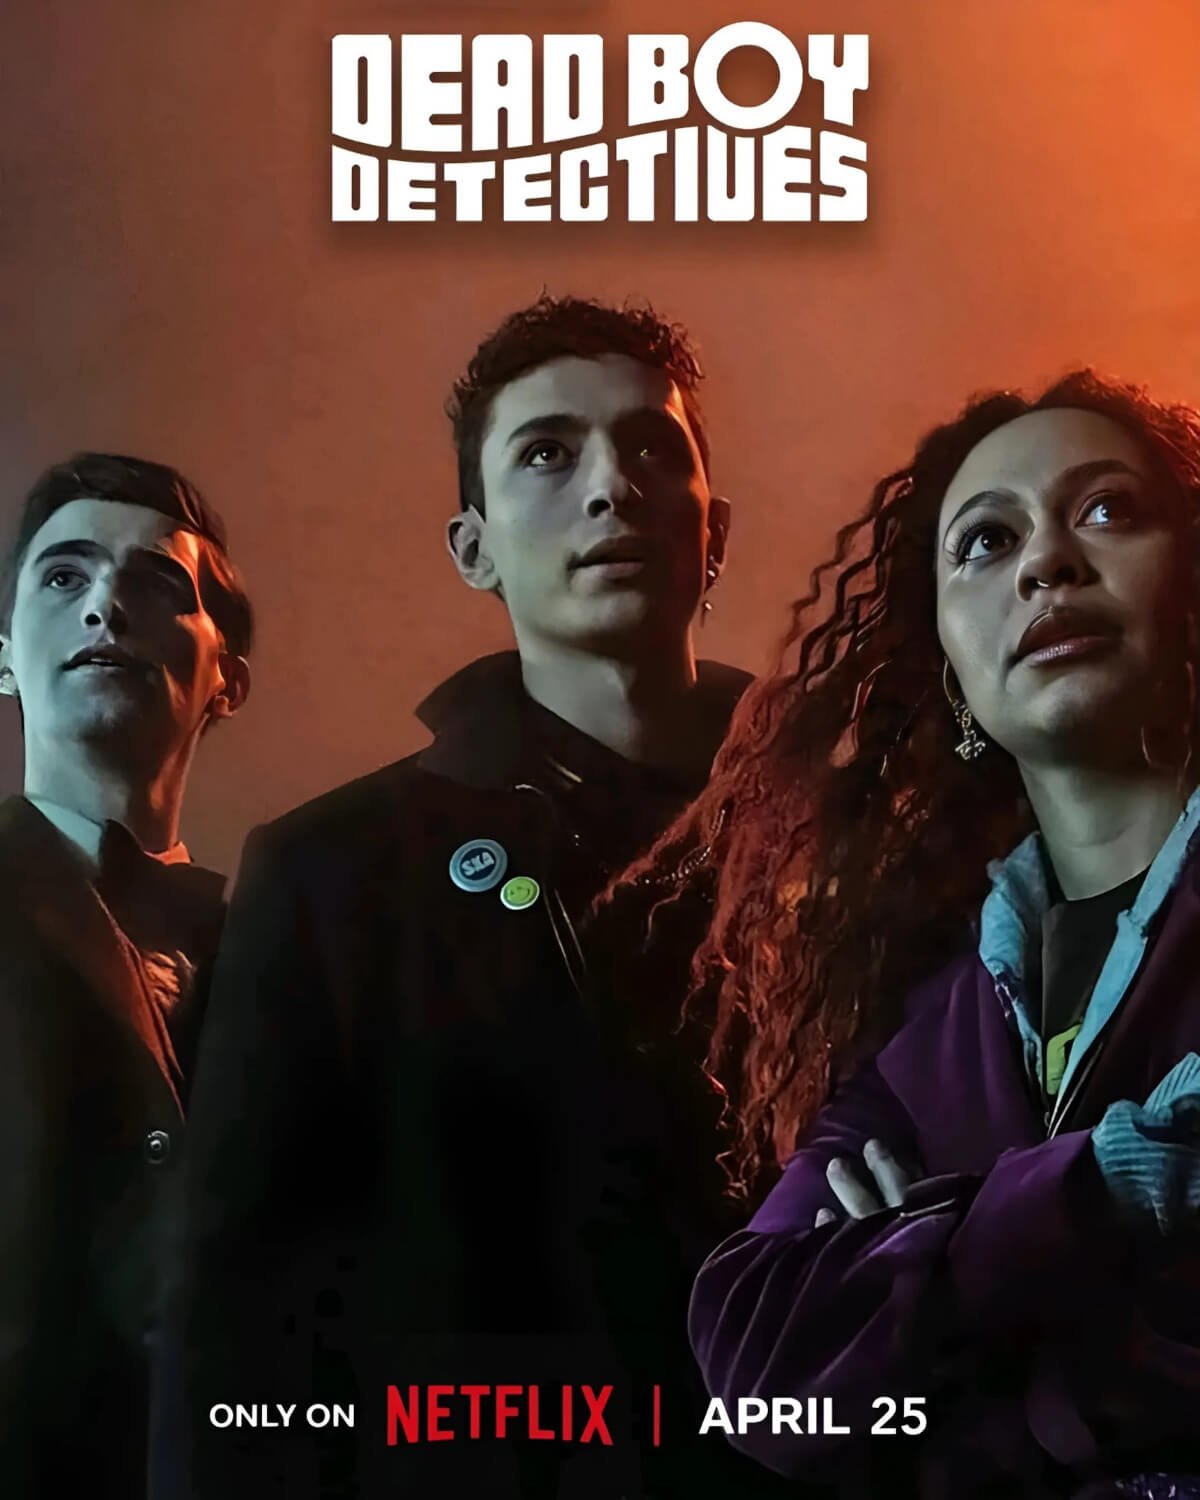 Poster promozionale di Dead Boy Detectives, in arrivo su Netflix il 25 aprile